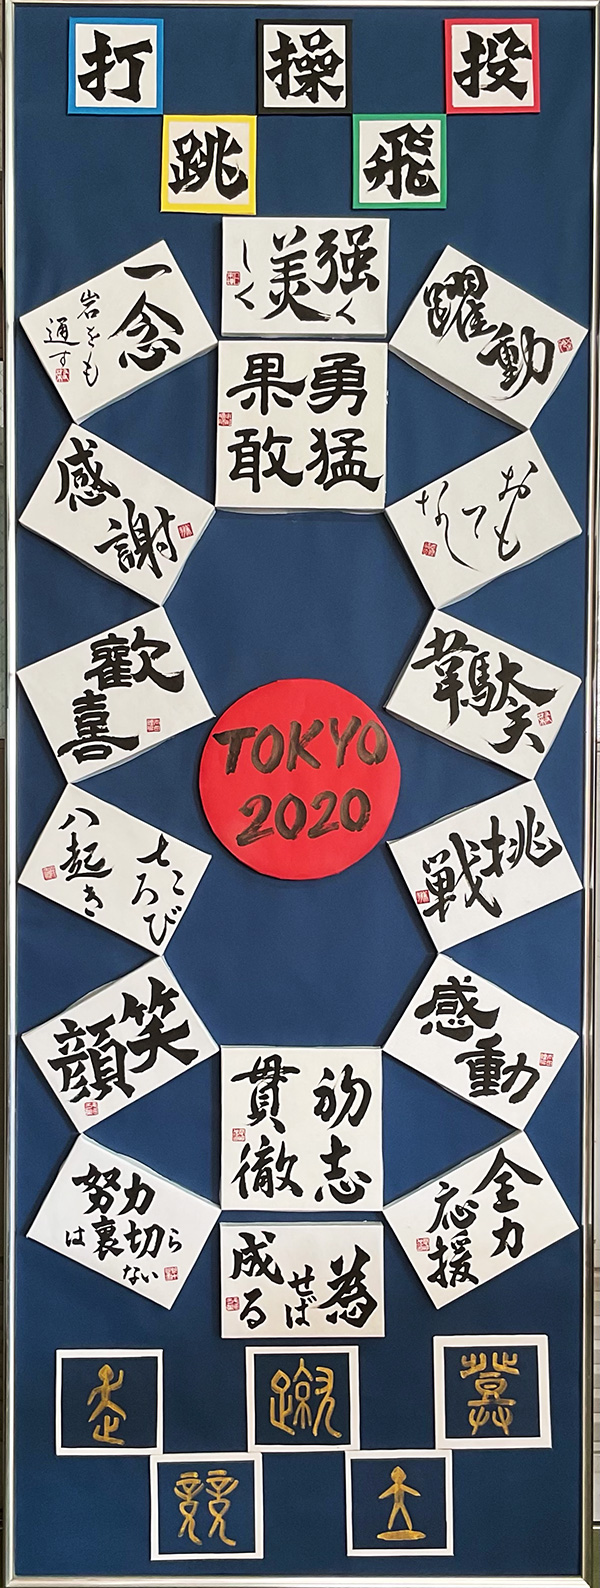 「東京2020」